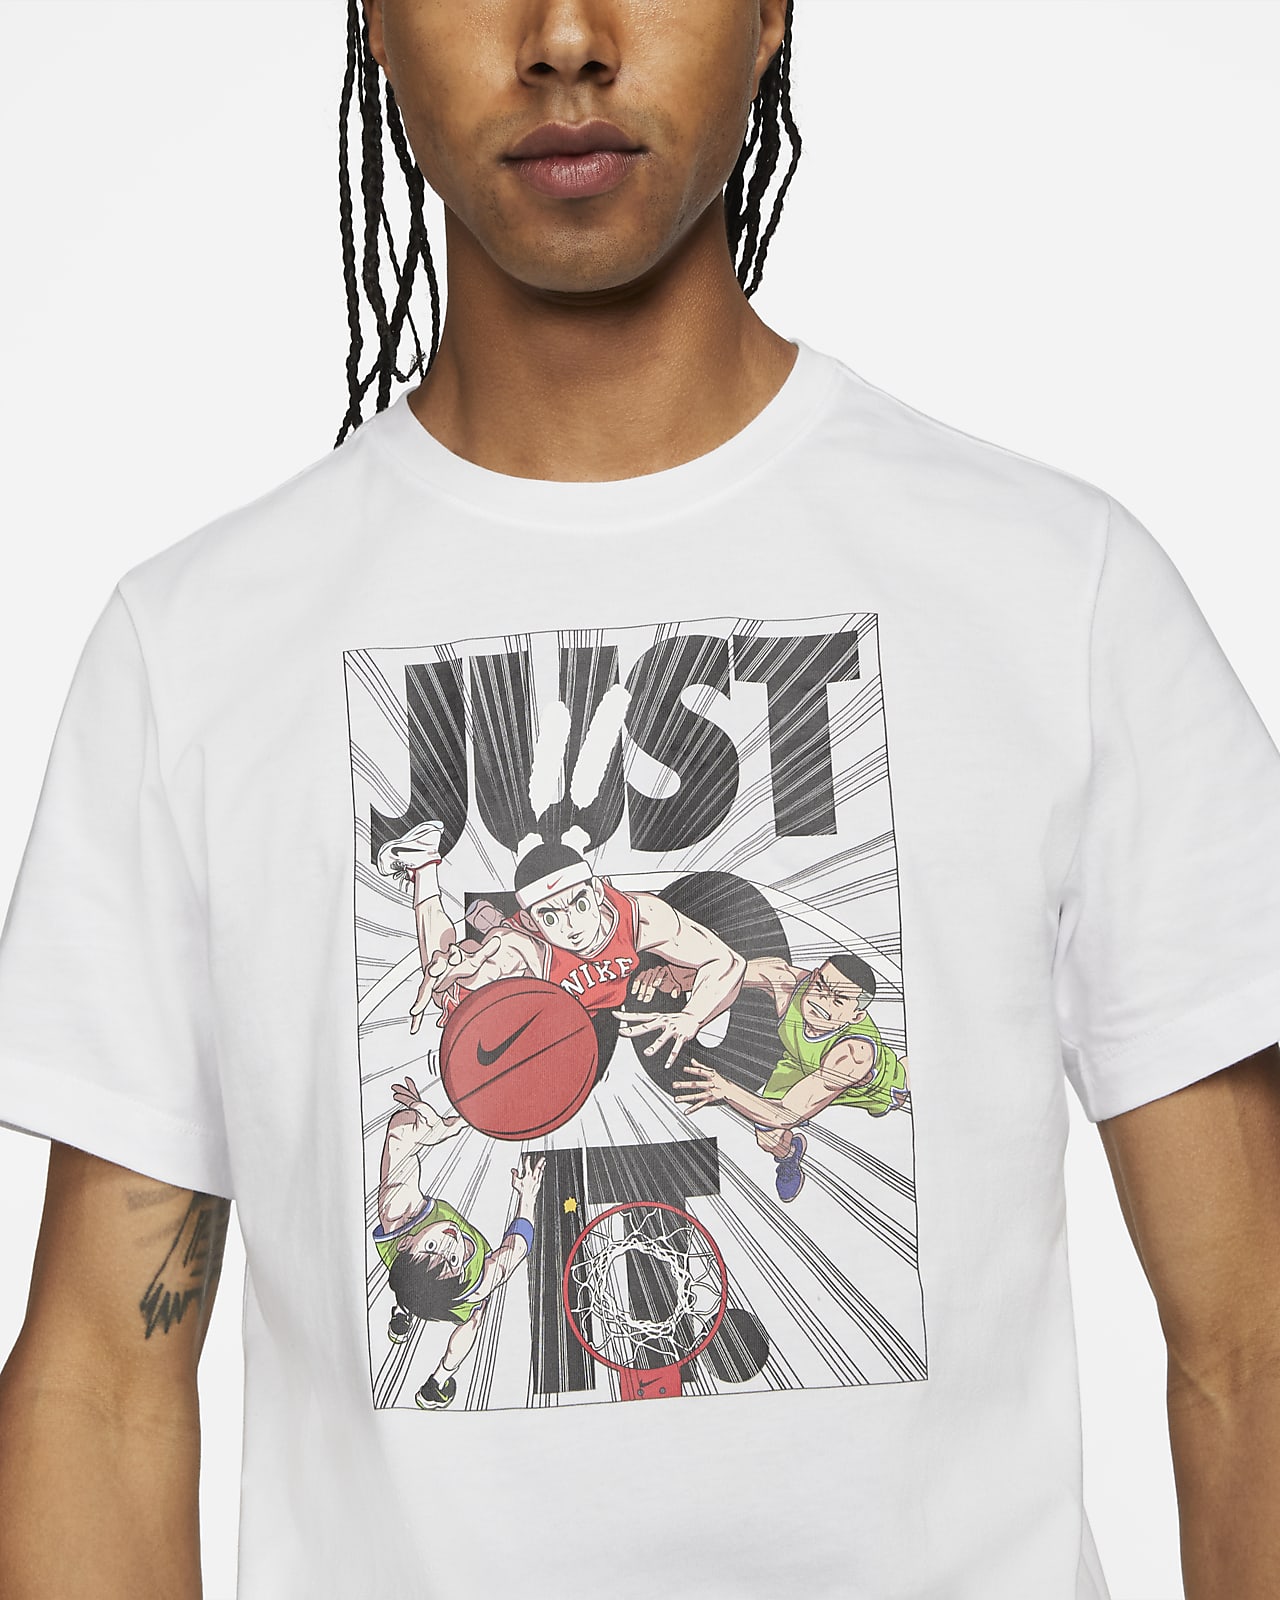 Nike公式 ナイキ Just Do It メンズ バスケットボール Tシャツ オンラインストア 通販サイト